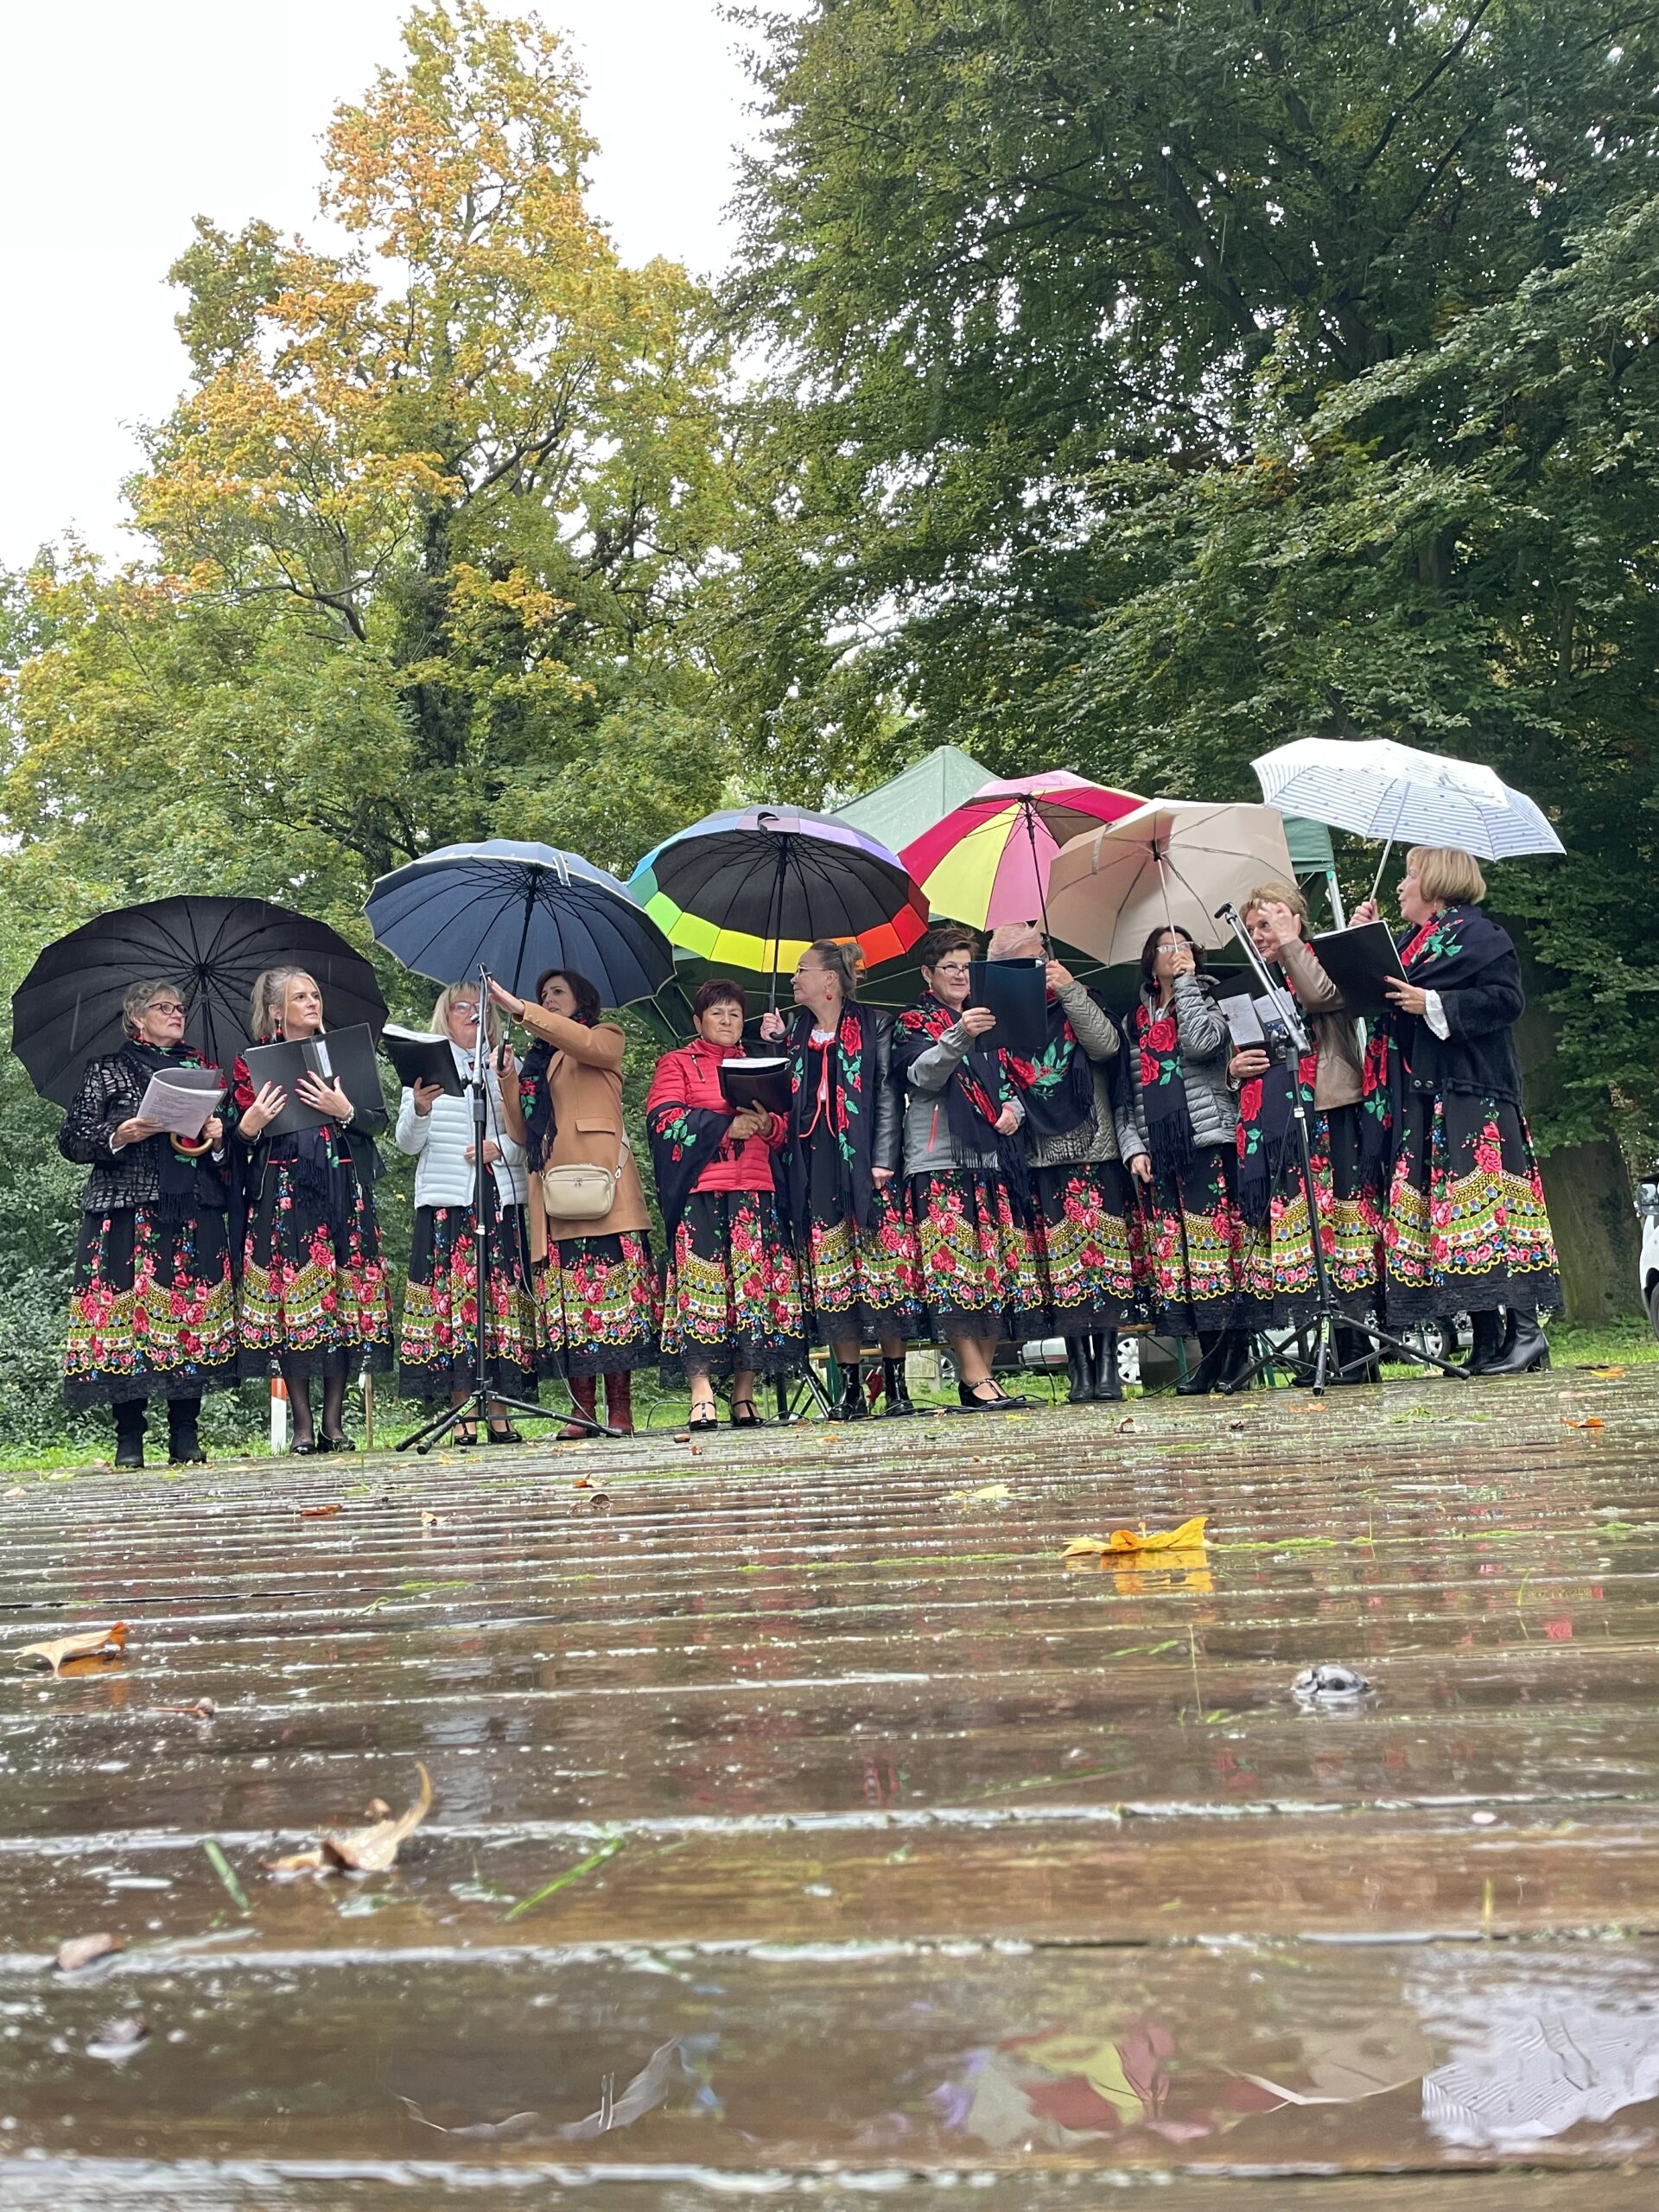 zespół osieczanki podczas występu na święcie pieczonego ziemniaka - Paie w pięknych d ługich czerwono czarnych spódnicach z parasolkami